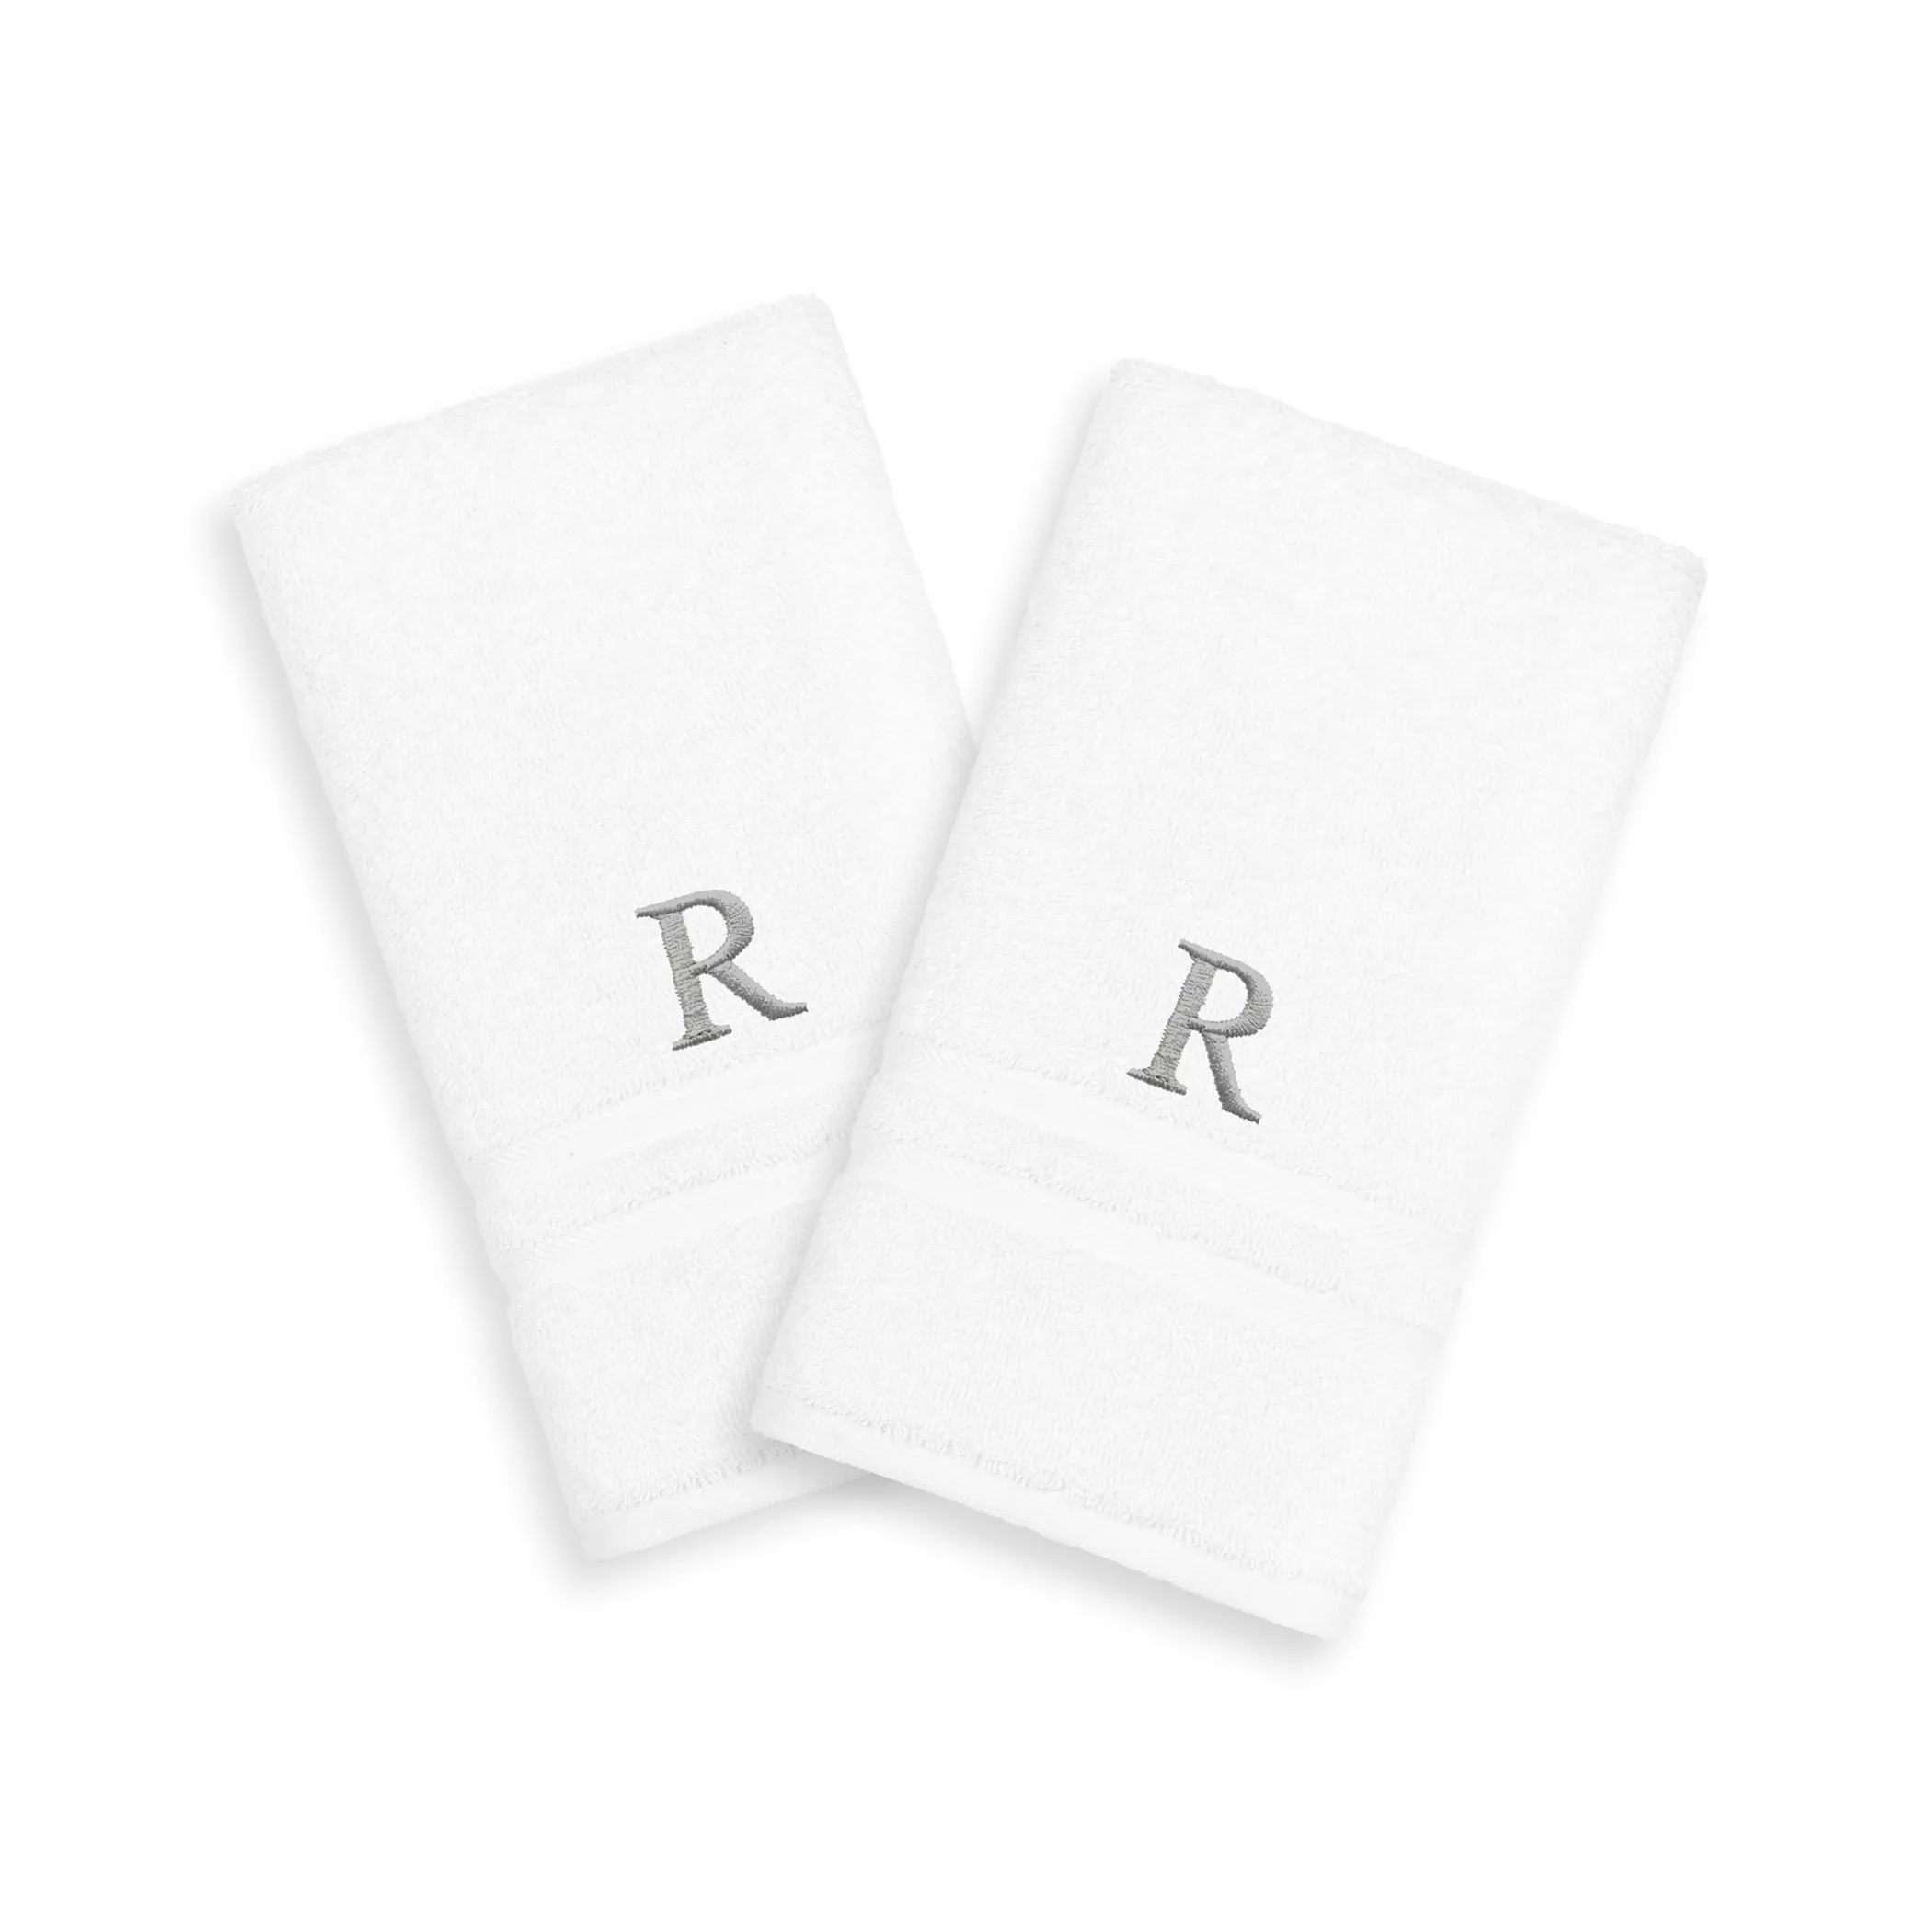 Linum Home Textiles, 2 упаковки серебристых полотенец для рук с монограммой